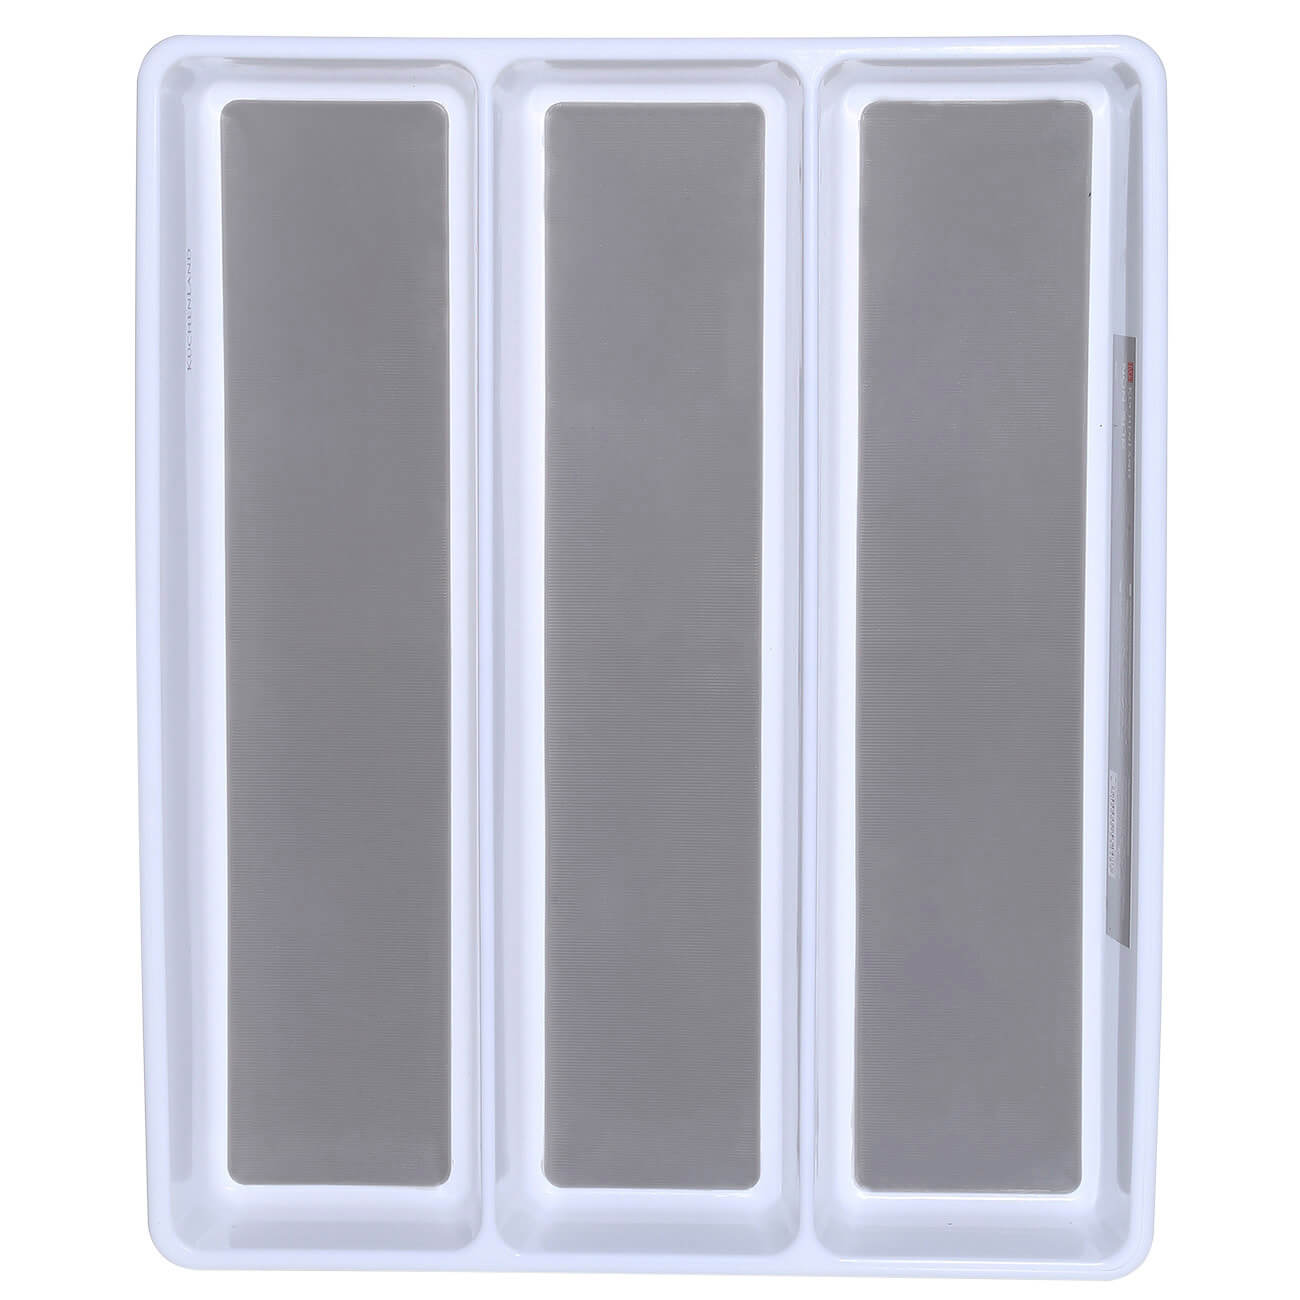 Kitchen accessories tray, 40x33 cm, 3 units, plastic / rubber, white-grey, Non-slip изображение № 1